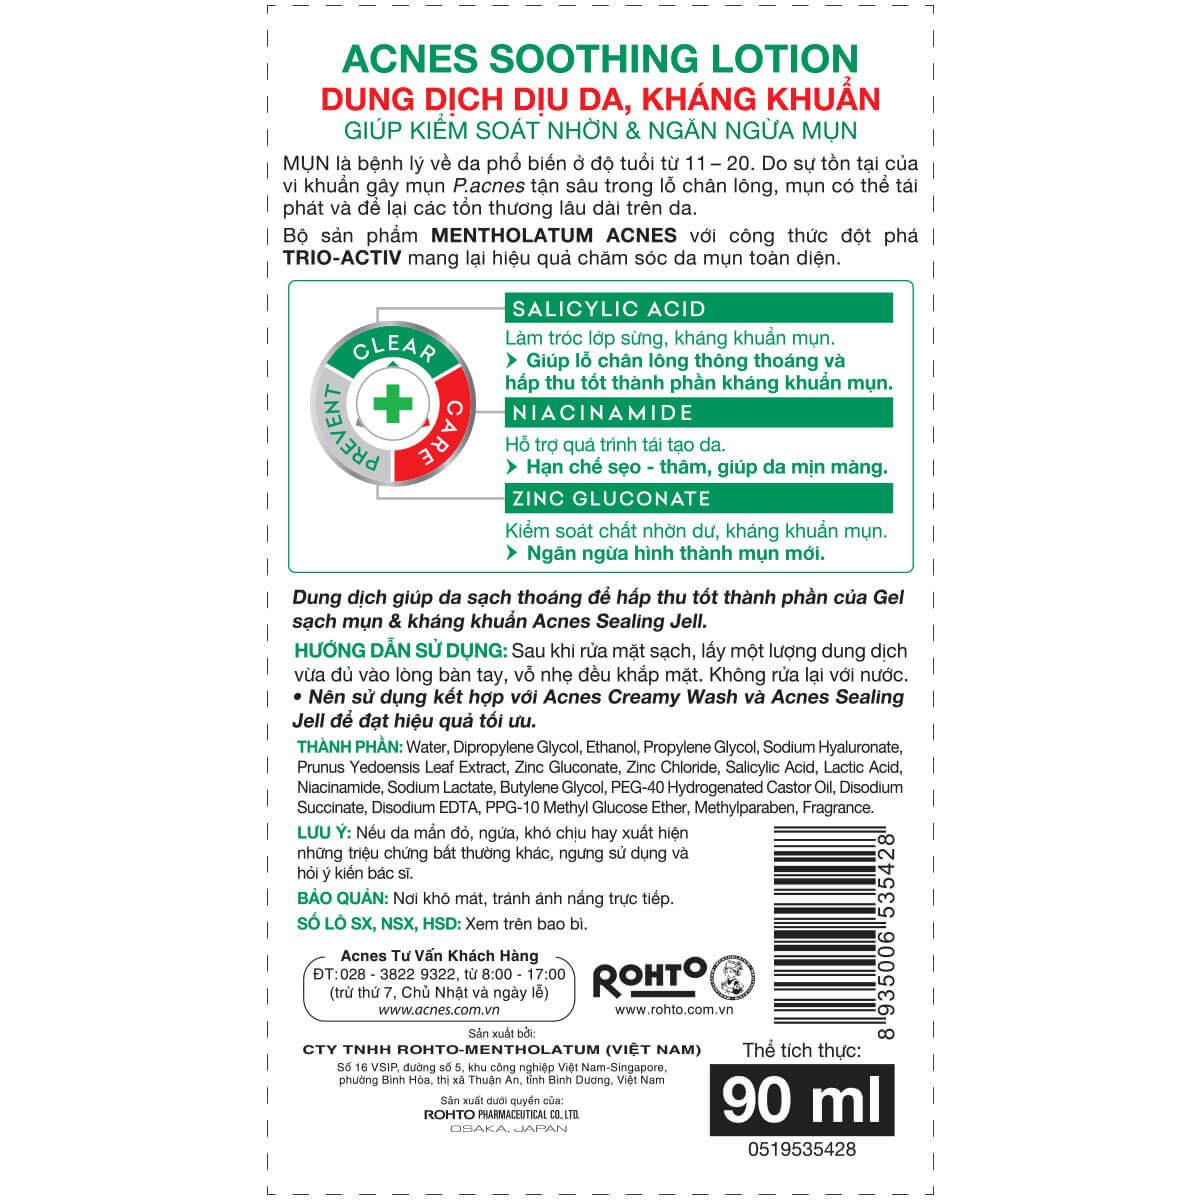 Acnes Soothing Lotion – Dung dịch dịu da kháng khuẩn